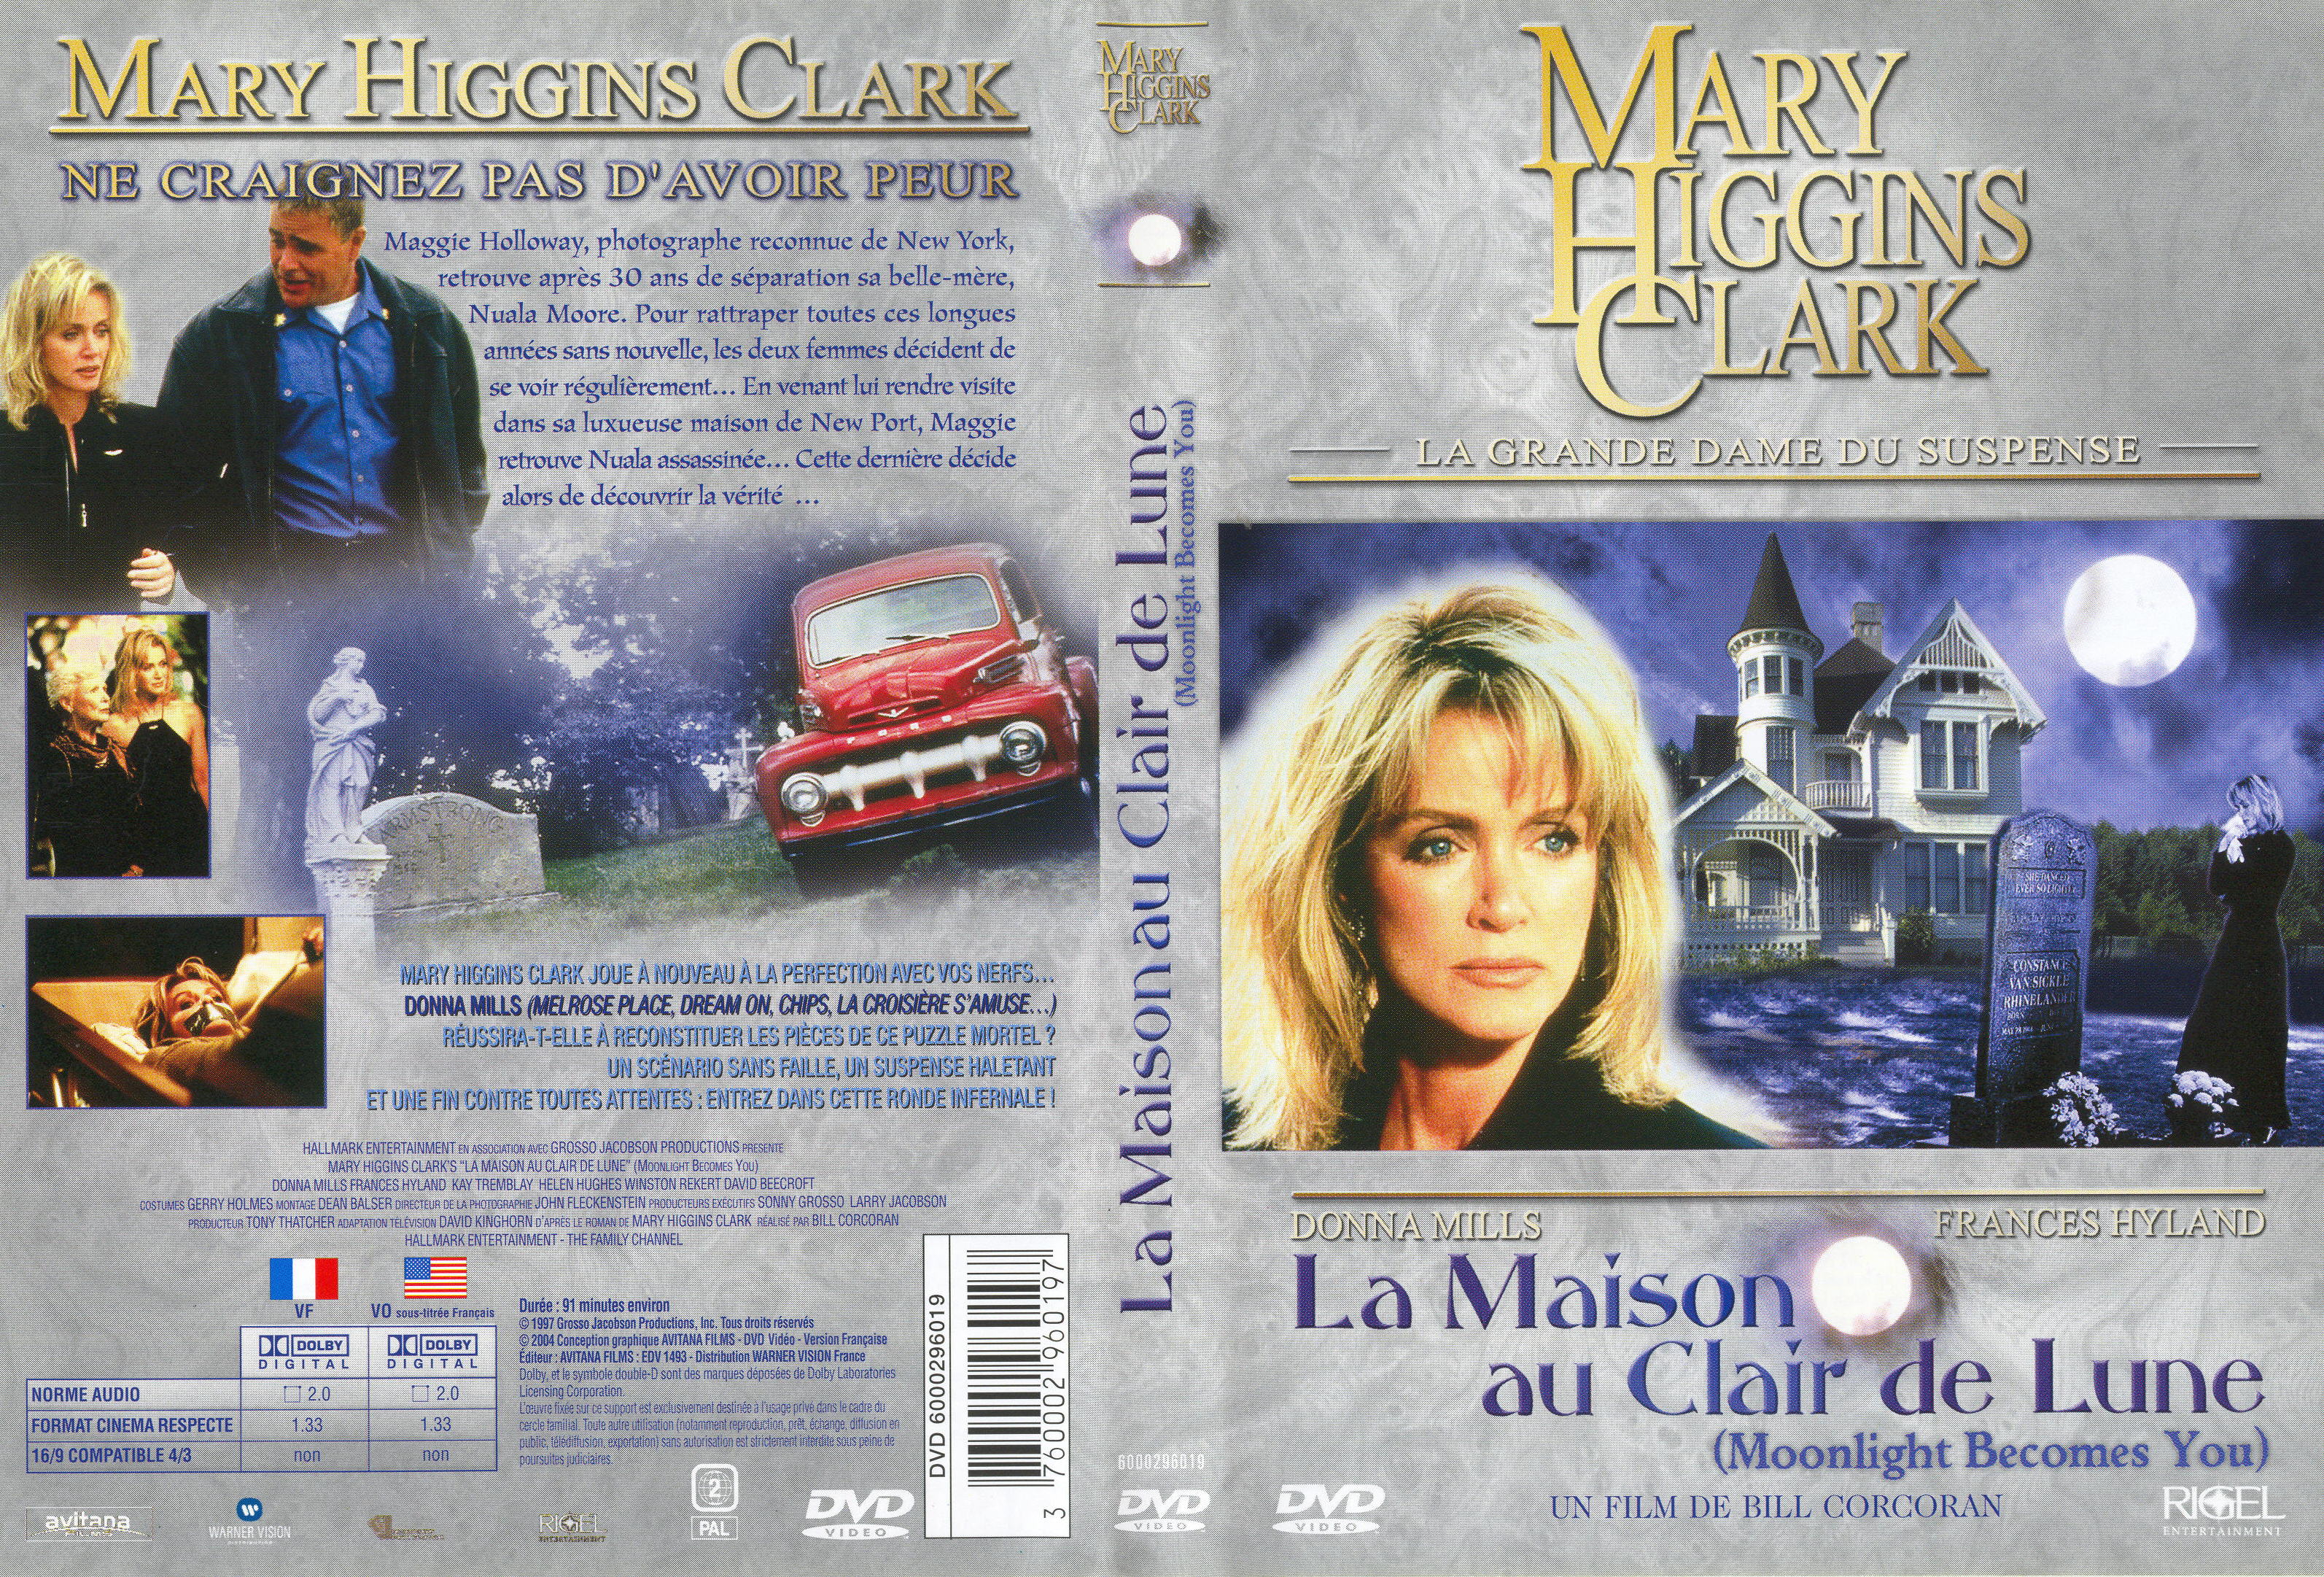 Jaquette DVD Mary Higgins Clark - La maison au clair de lune